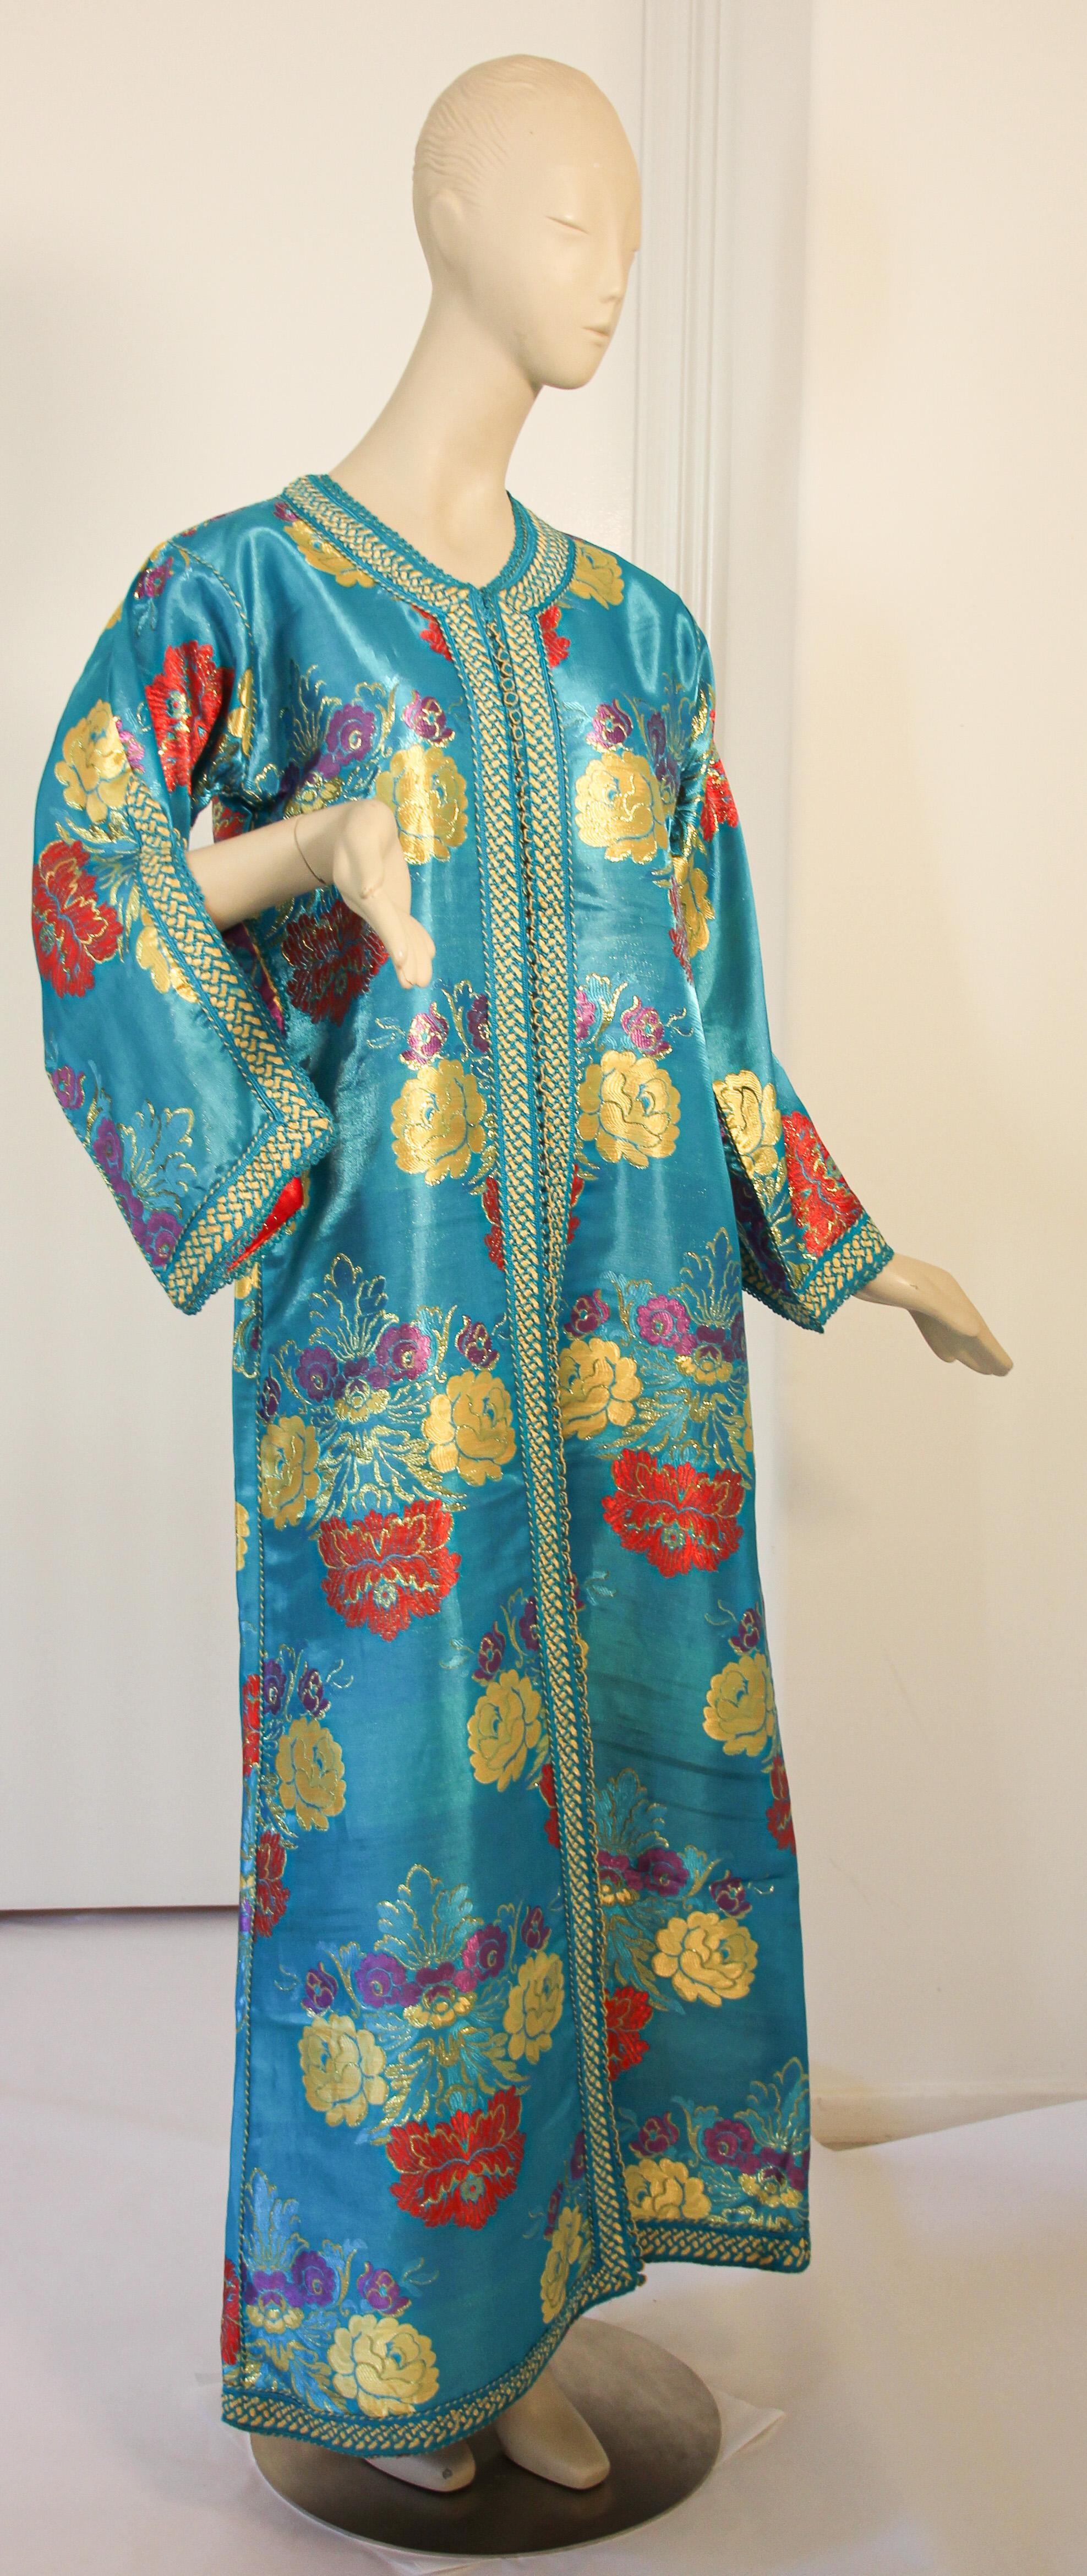 Elegant caftan marocain en brocart floral bleu métallisé,
Il s'agit d'un exemple exceptionnel de design de mode marocain.
Fabriqué à la main au Maroc et taillé pour une coupe décontractée avec des manches larges, il est confectionné dans la forme